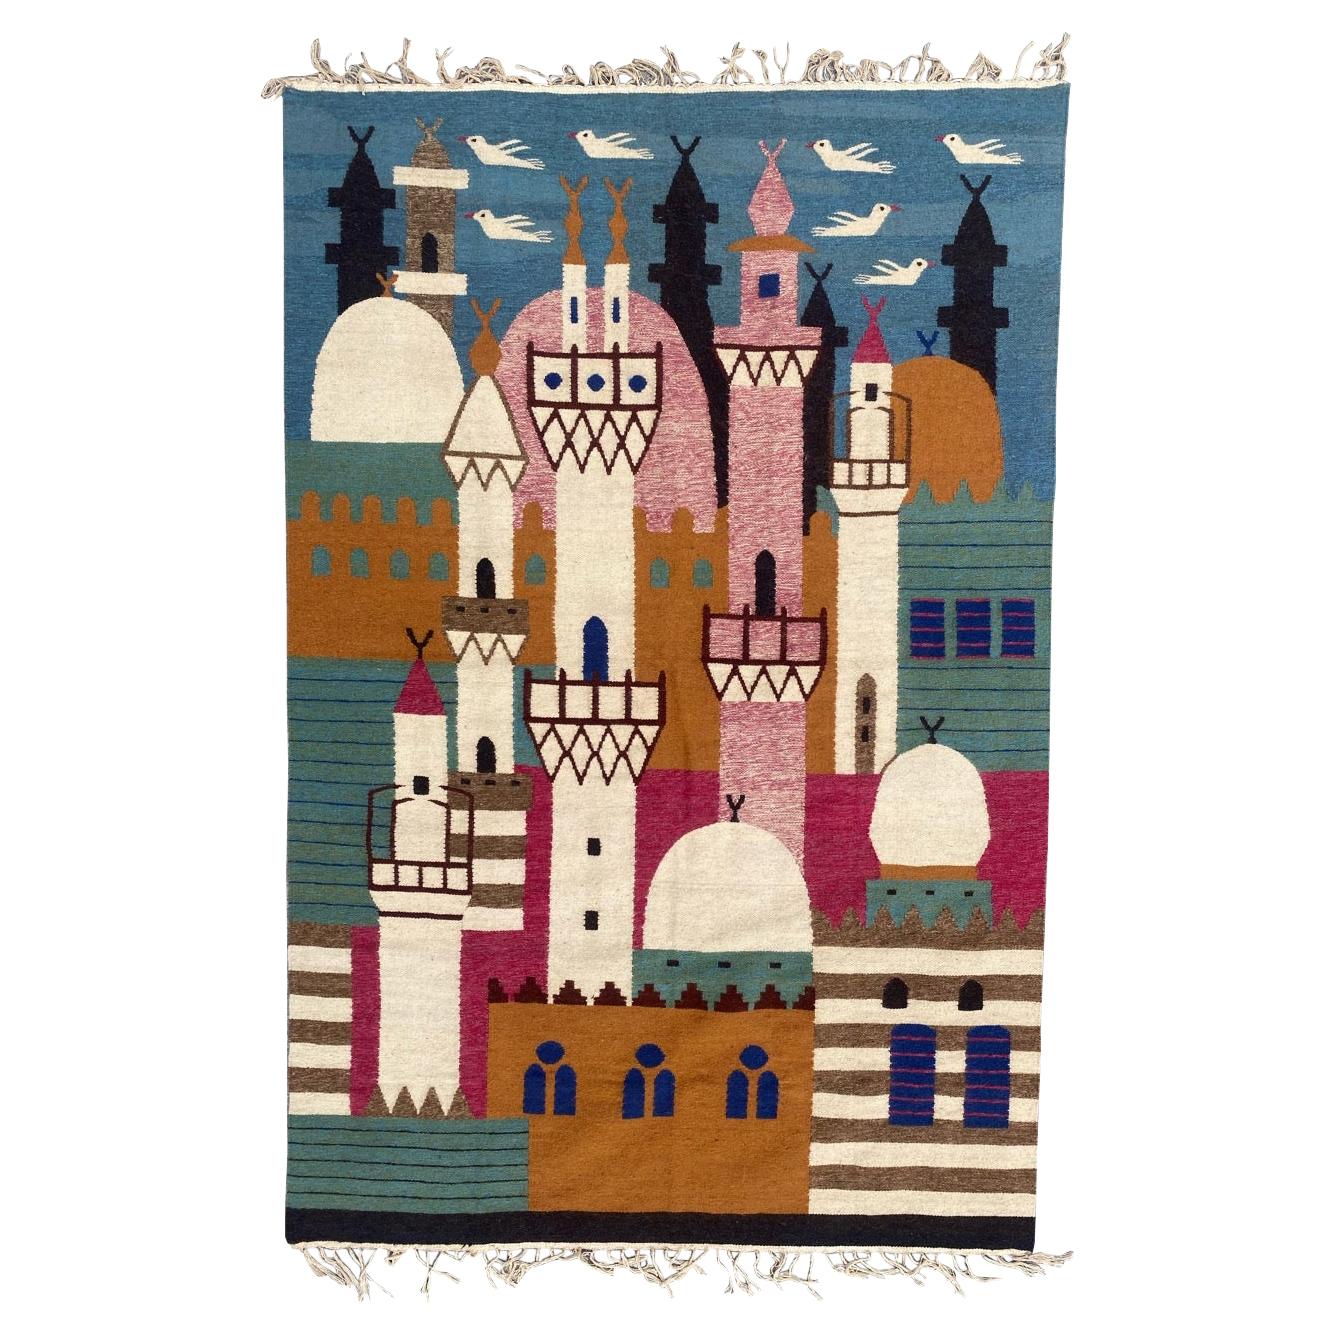 Bobyrug’s Wonderful vintage Egyptian Tapestry For Sale